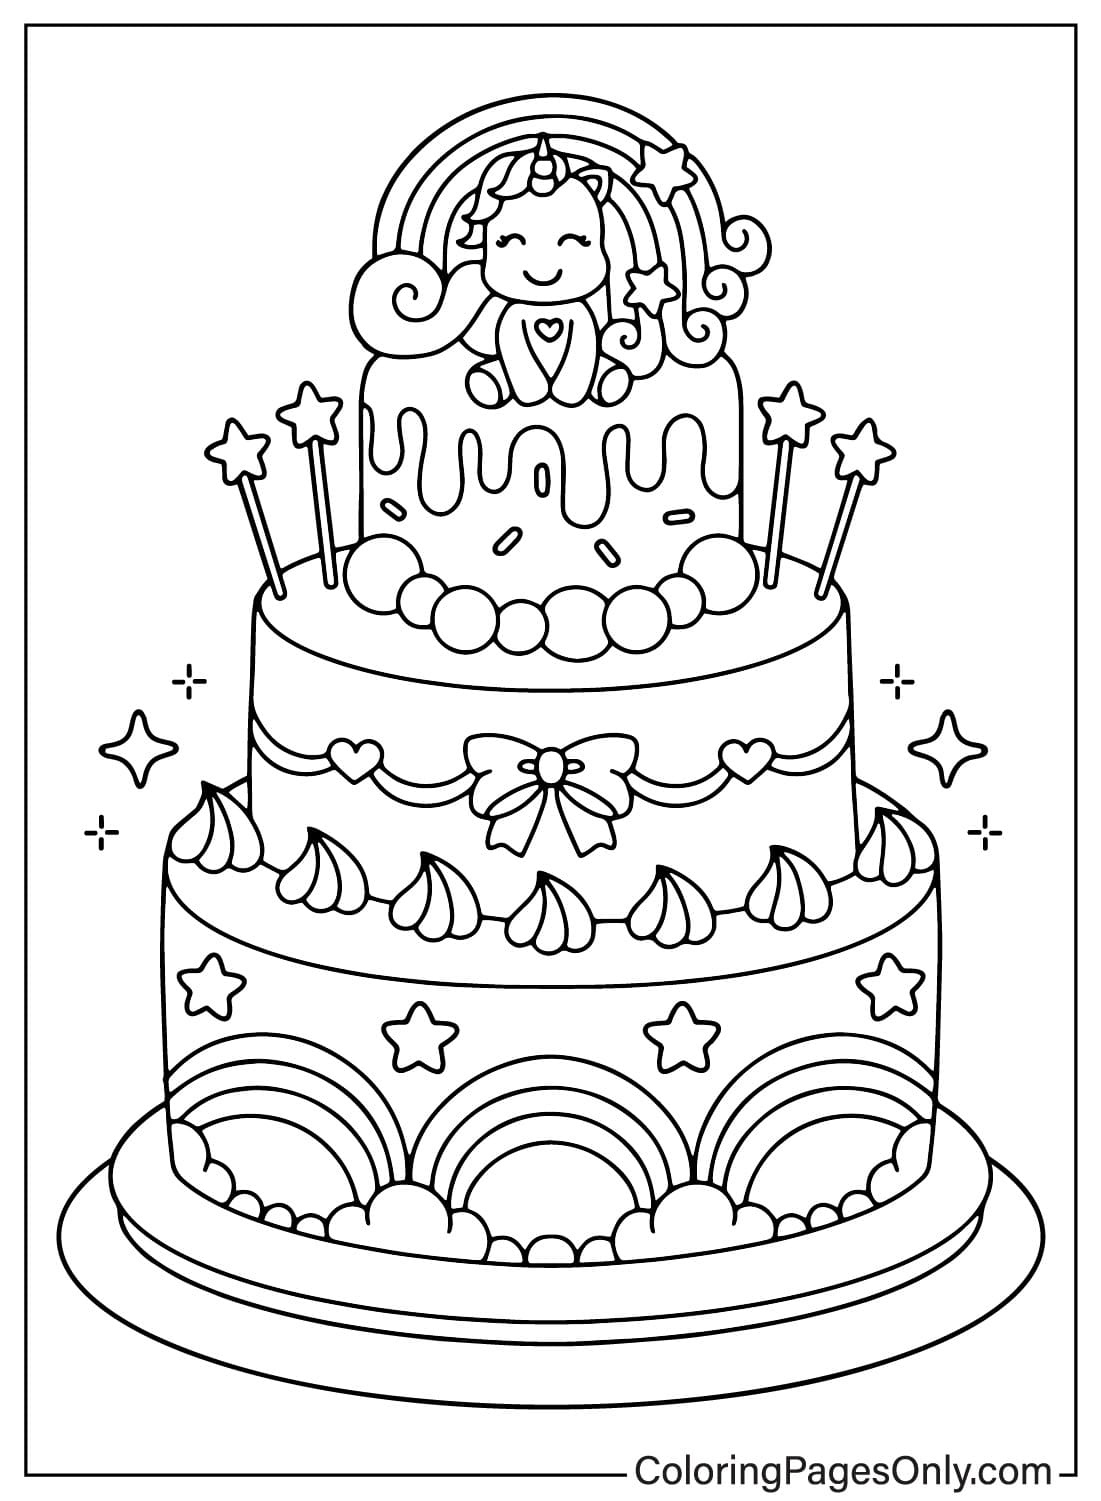 صفحة ملونة لكعكة عيد الميلاد من كعكة عيد الميلاد